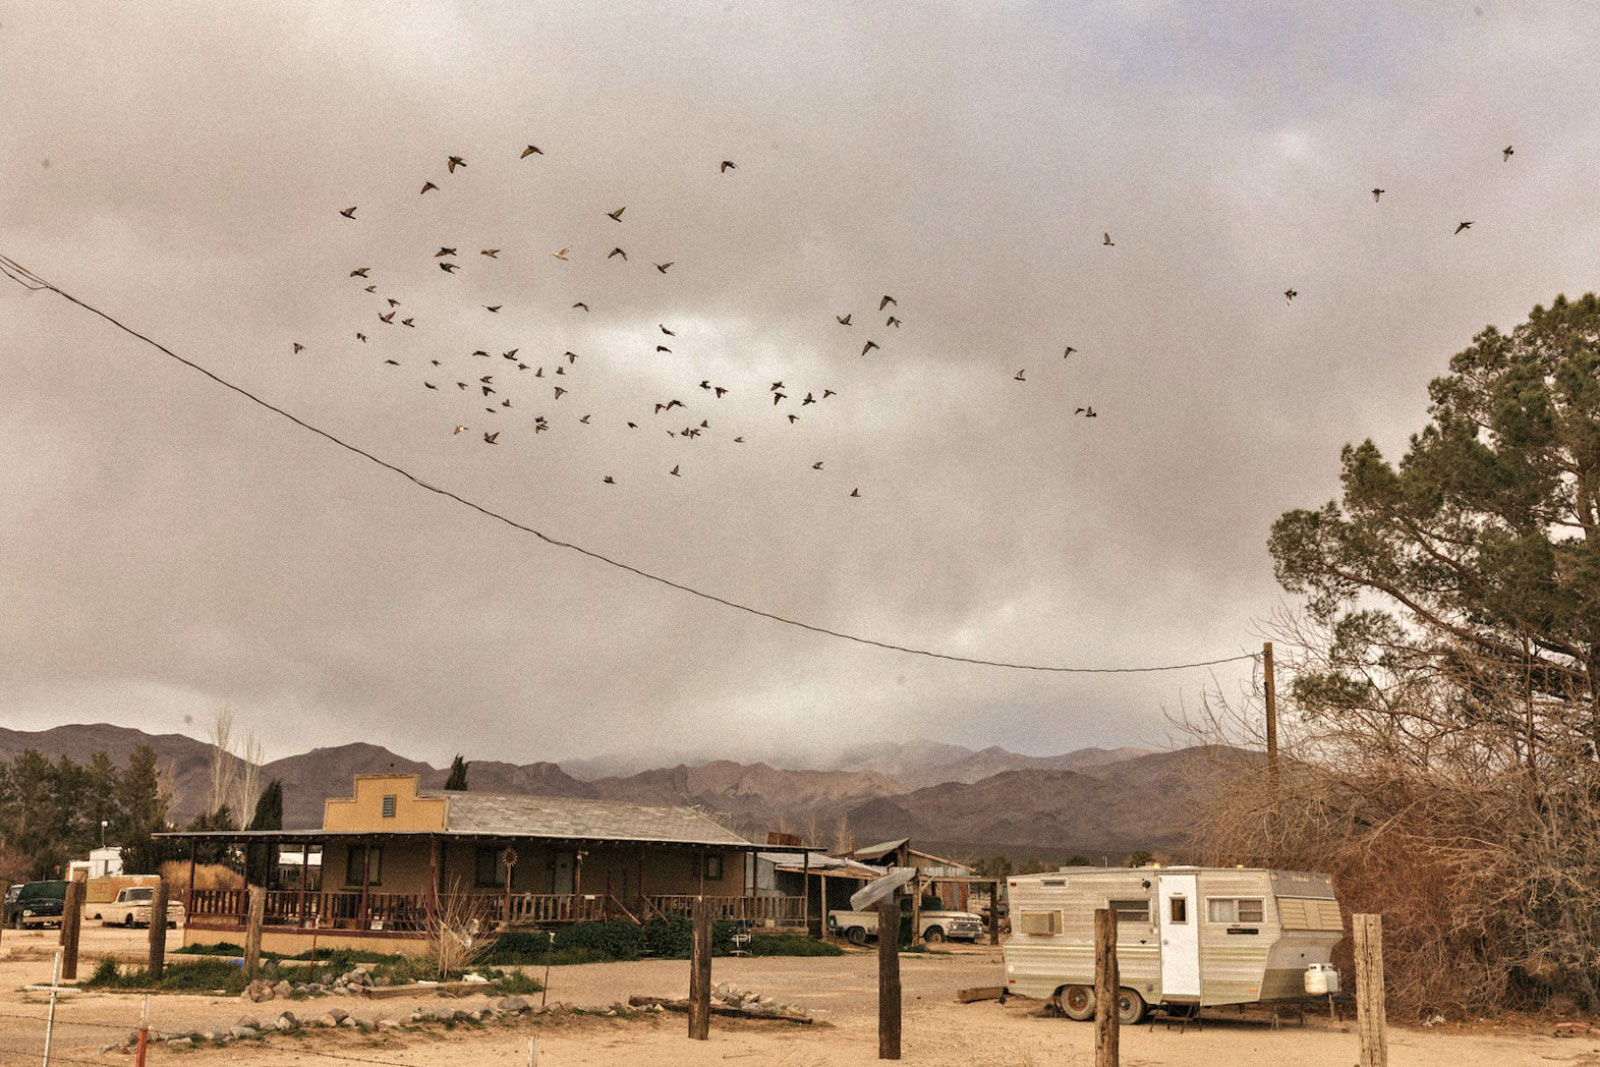 une volée d'oiseaux survole une ligne électrique jusqu'à une maison avec un camping-car à l'extérieur